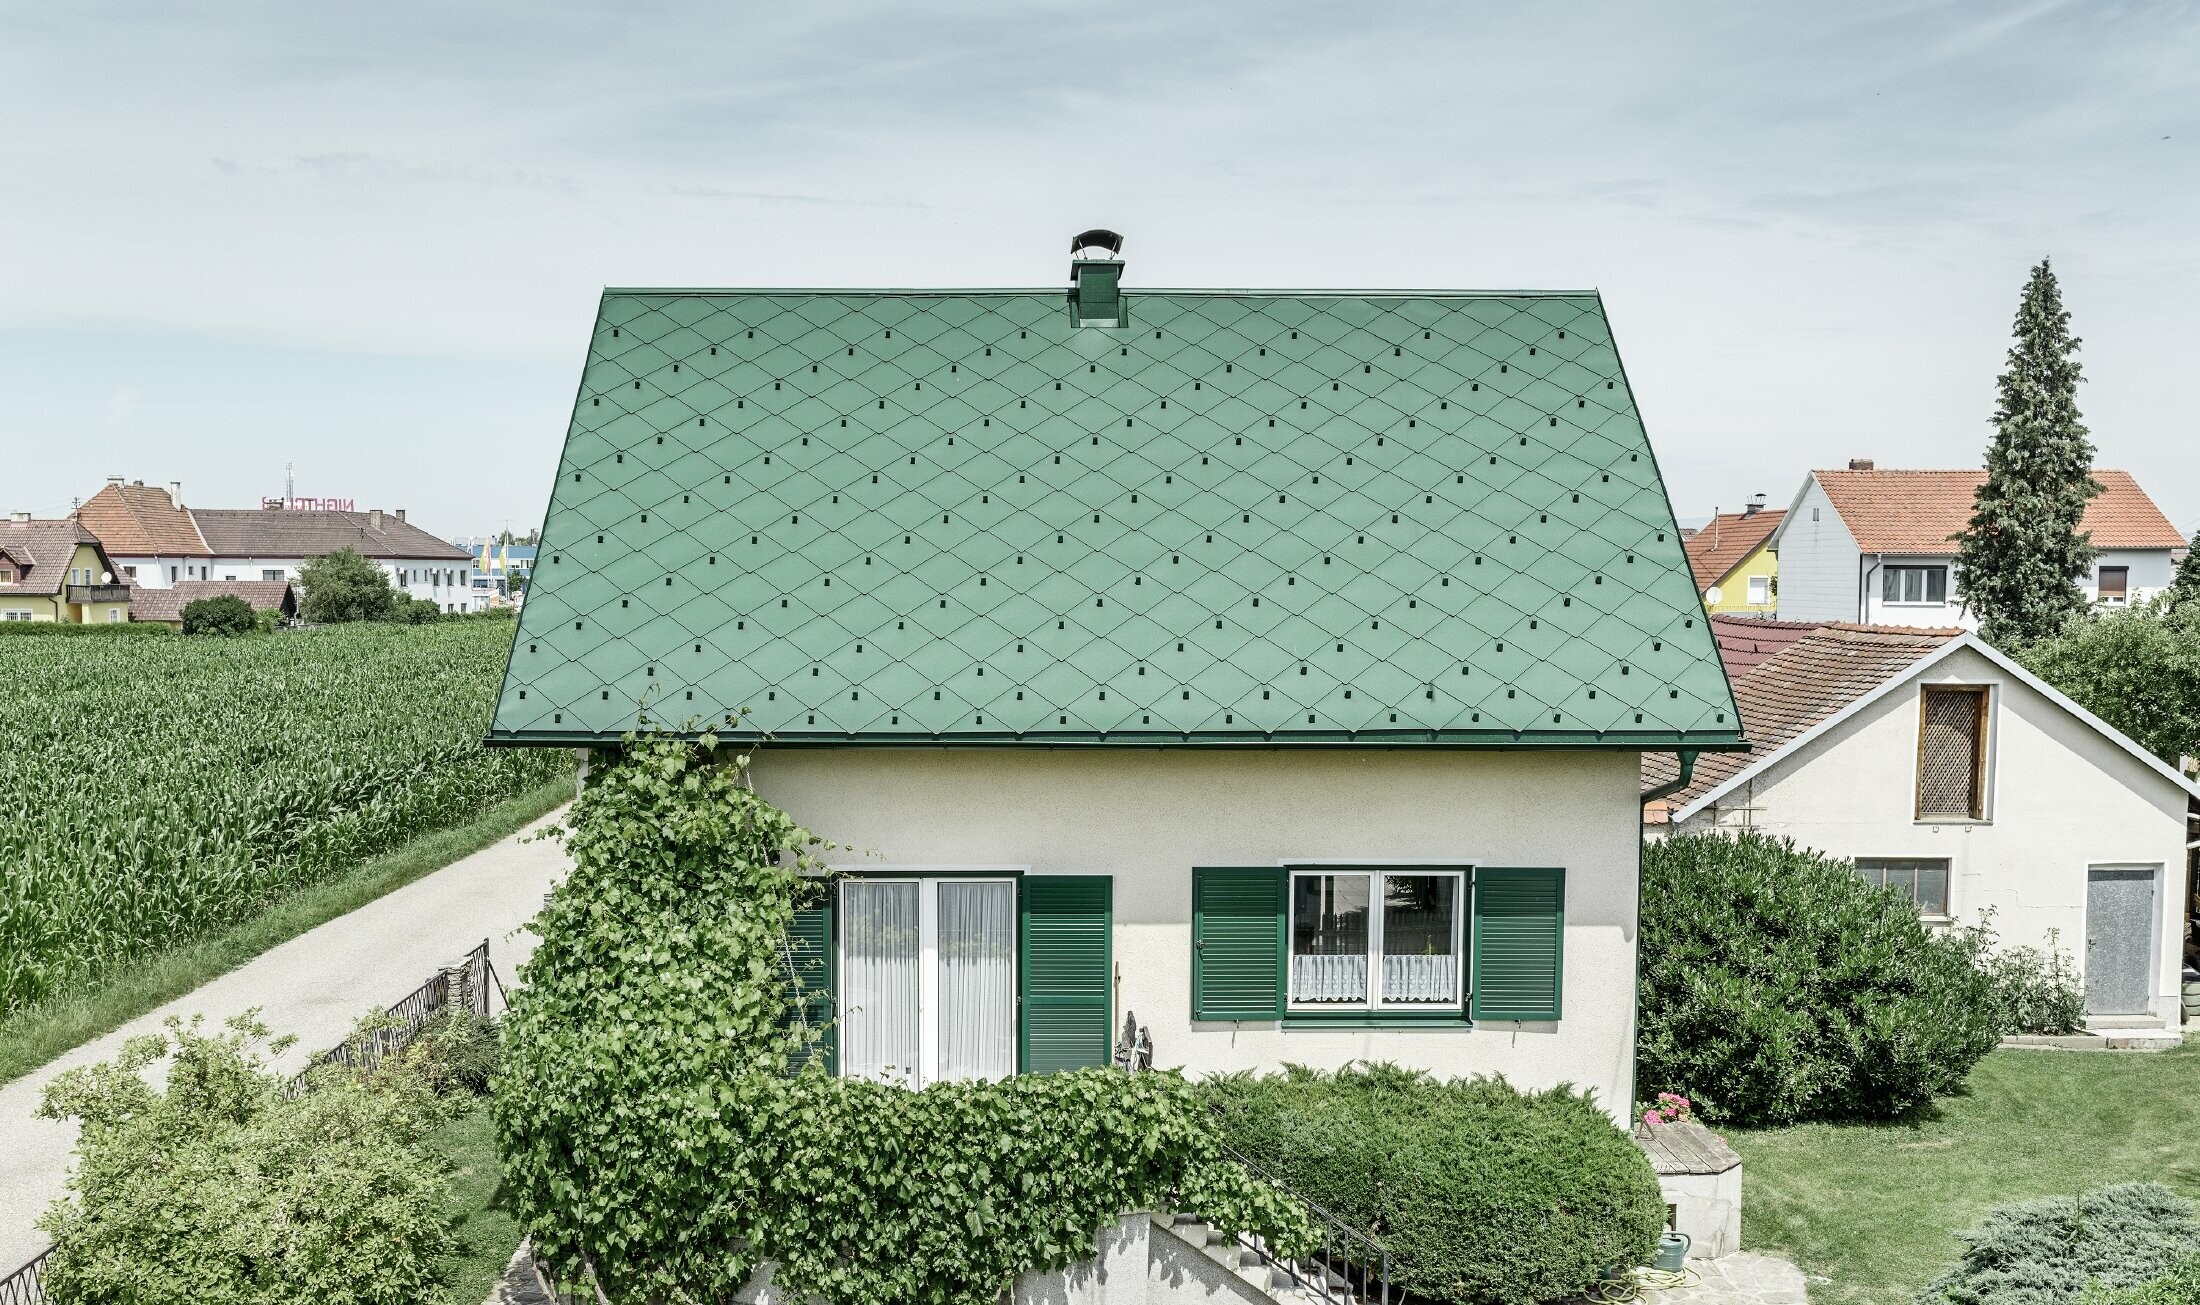 Klassieke eengezinswoning met zadeldak met een dakbedekking van aluminium in mosgroen met groene luiken. Het dak is bedekt met PREFA daklosanges van 44 × 44 in P.10 mosgroen.